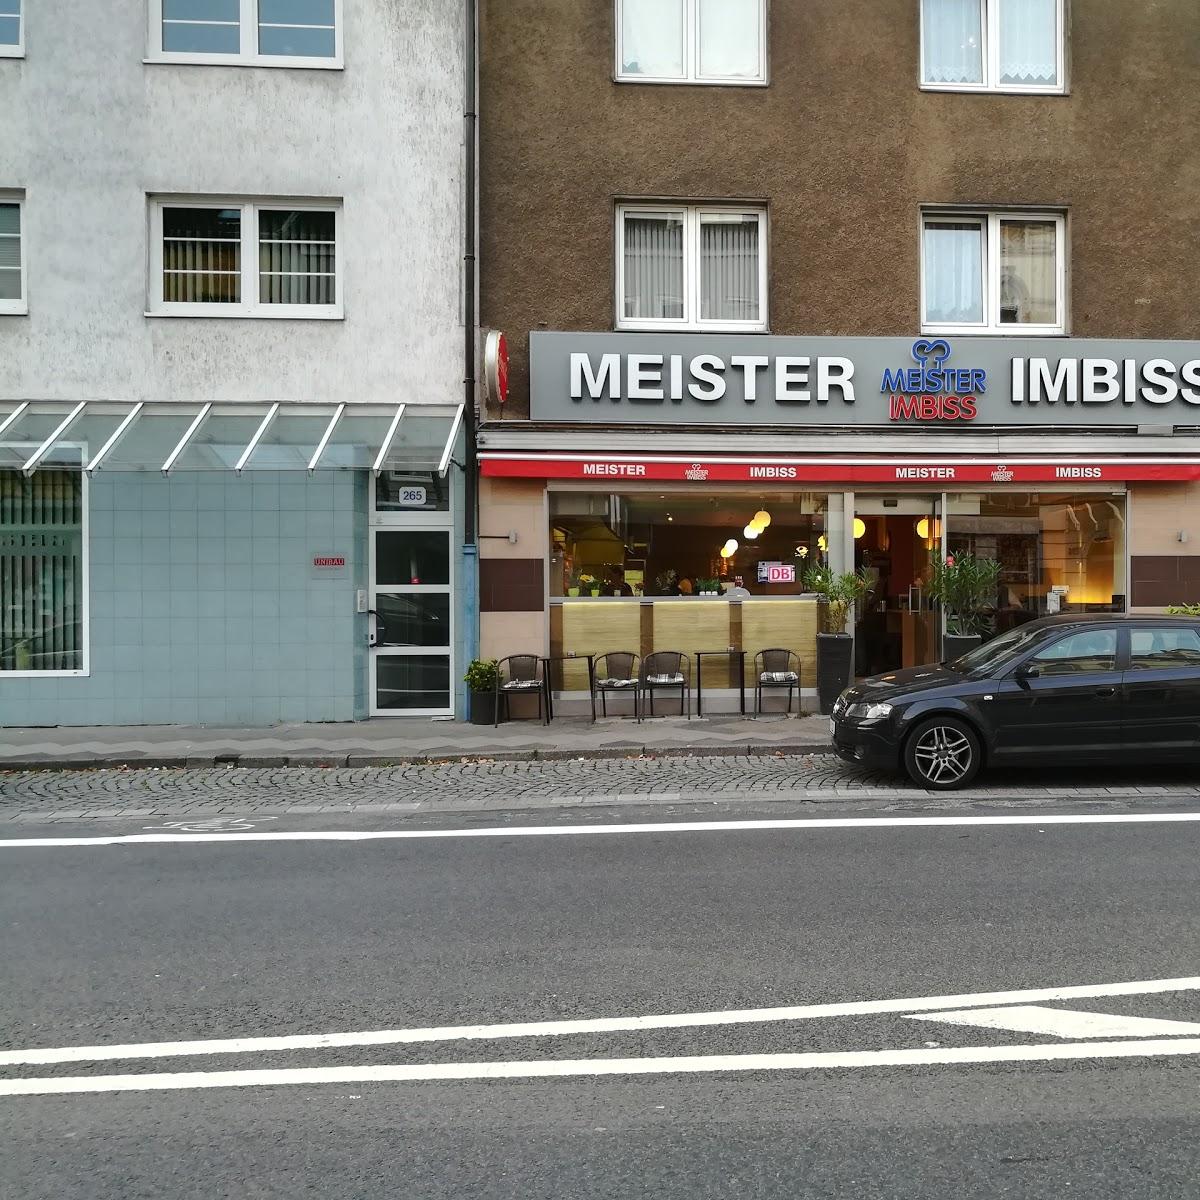 Restaurant "Meister-Imbiss" in Düsseldorf